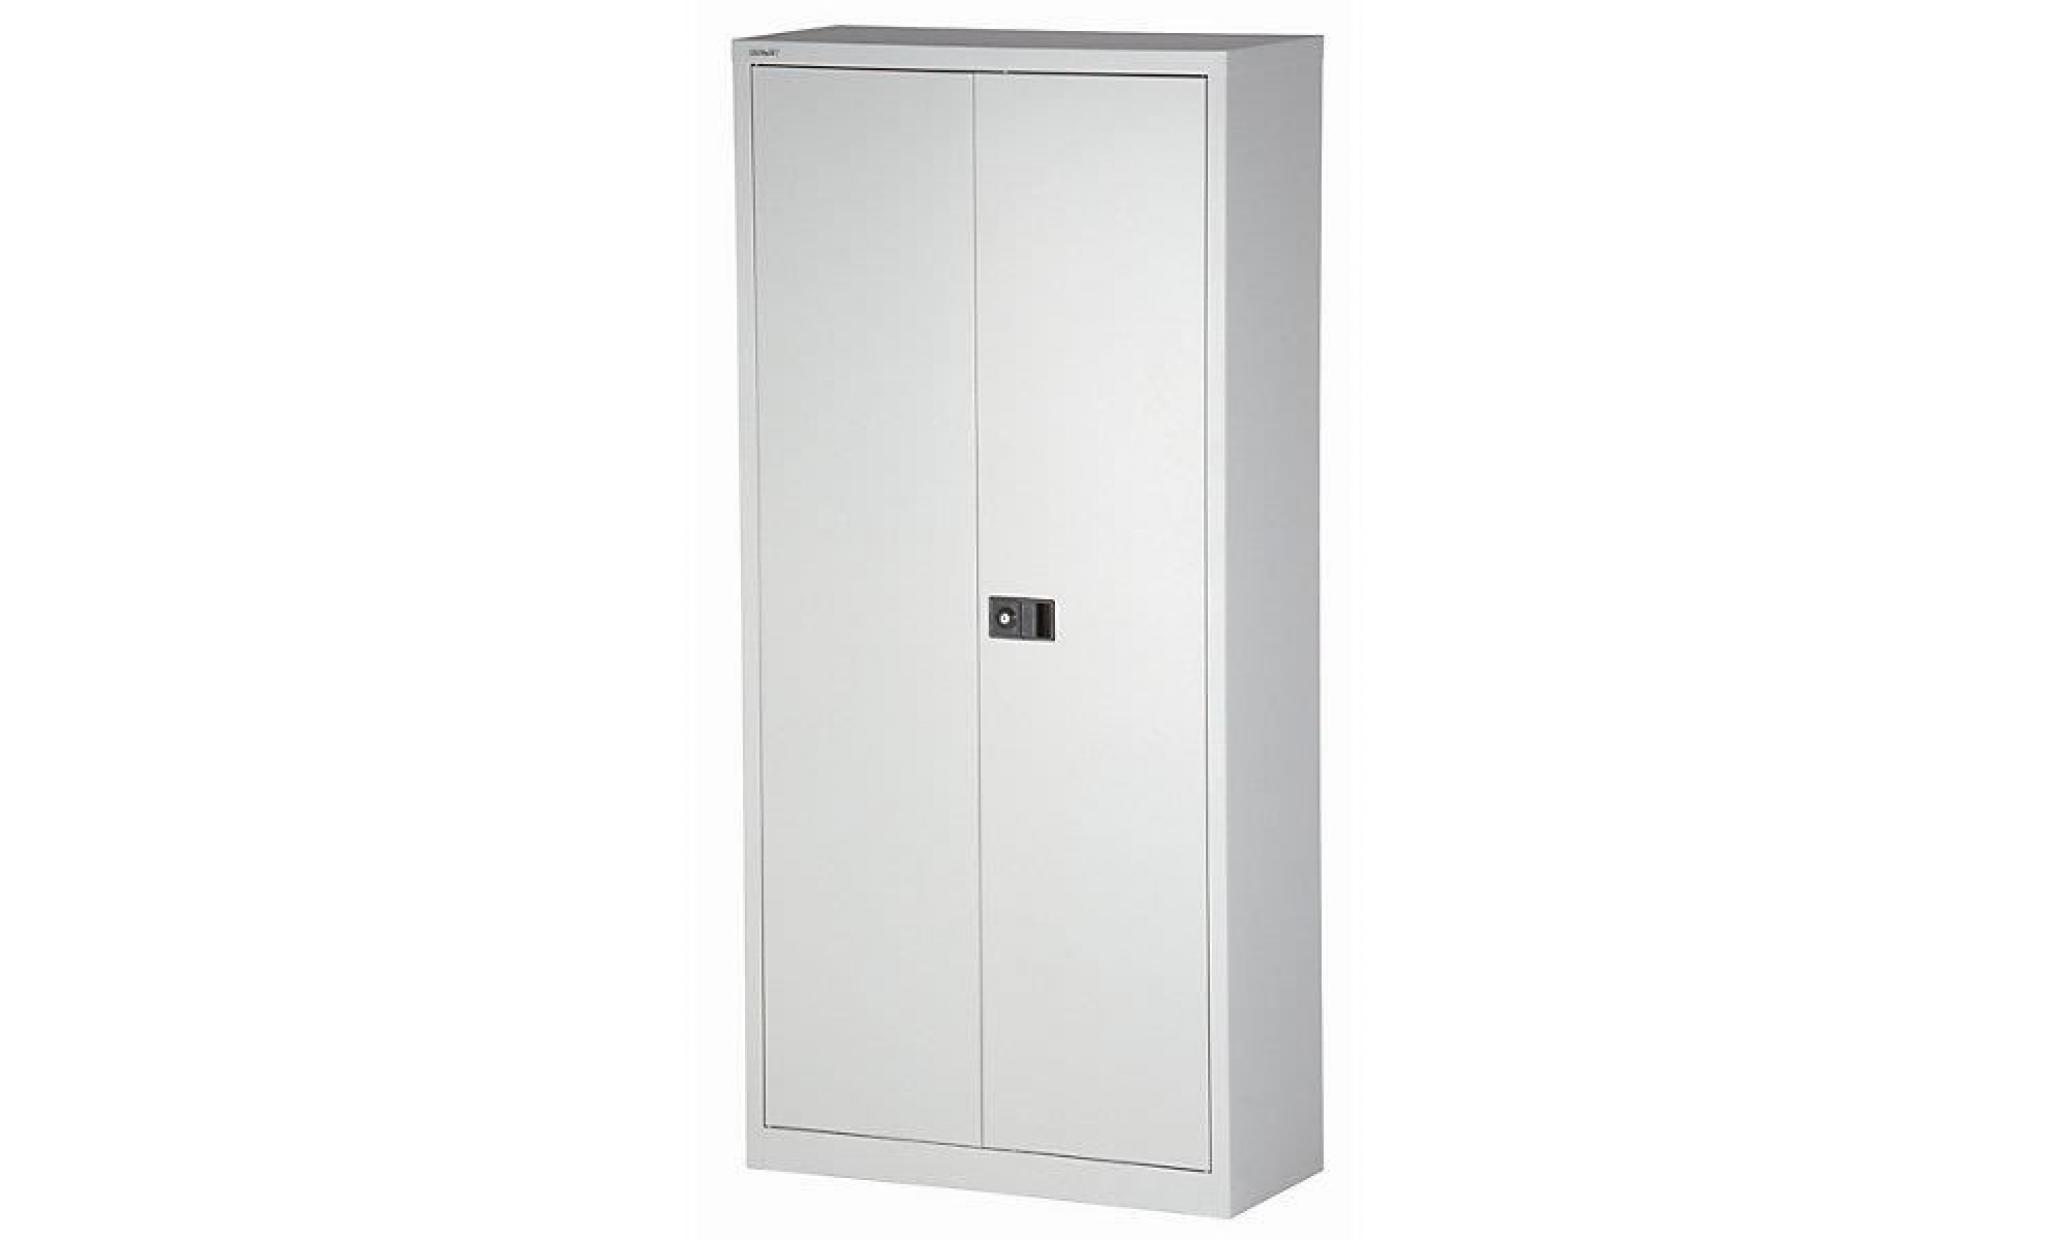 bisley armoire à portes battantes universal   vestiaire argent   armoire d'atelier armoire de bureau armoire métallique armoires pas cher